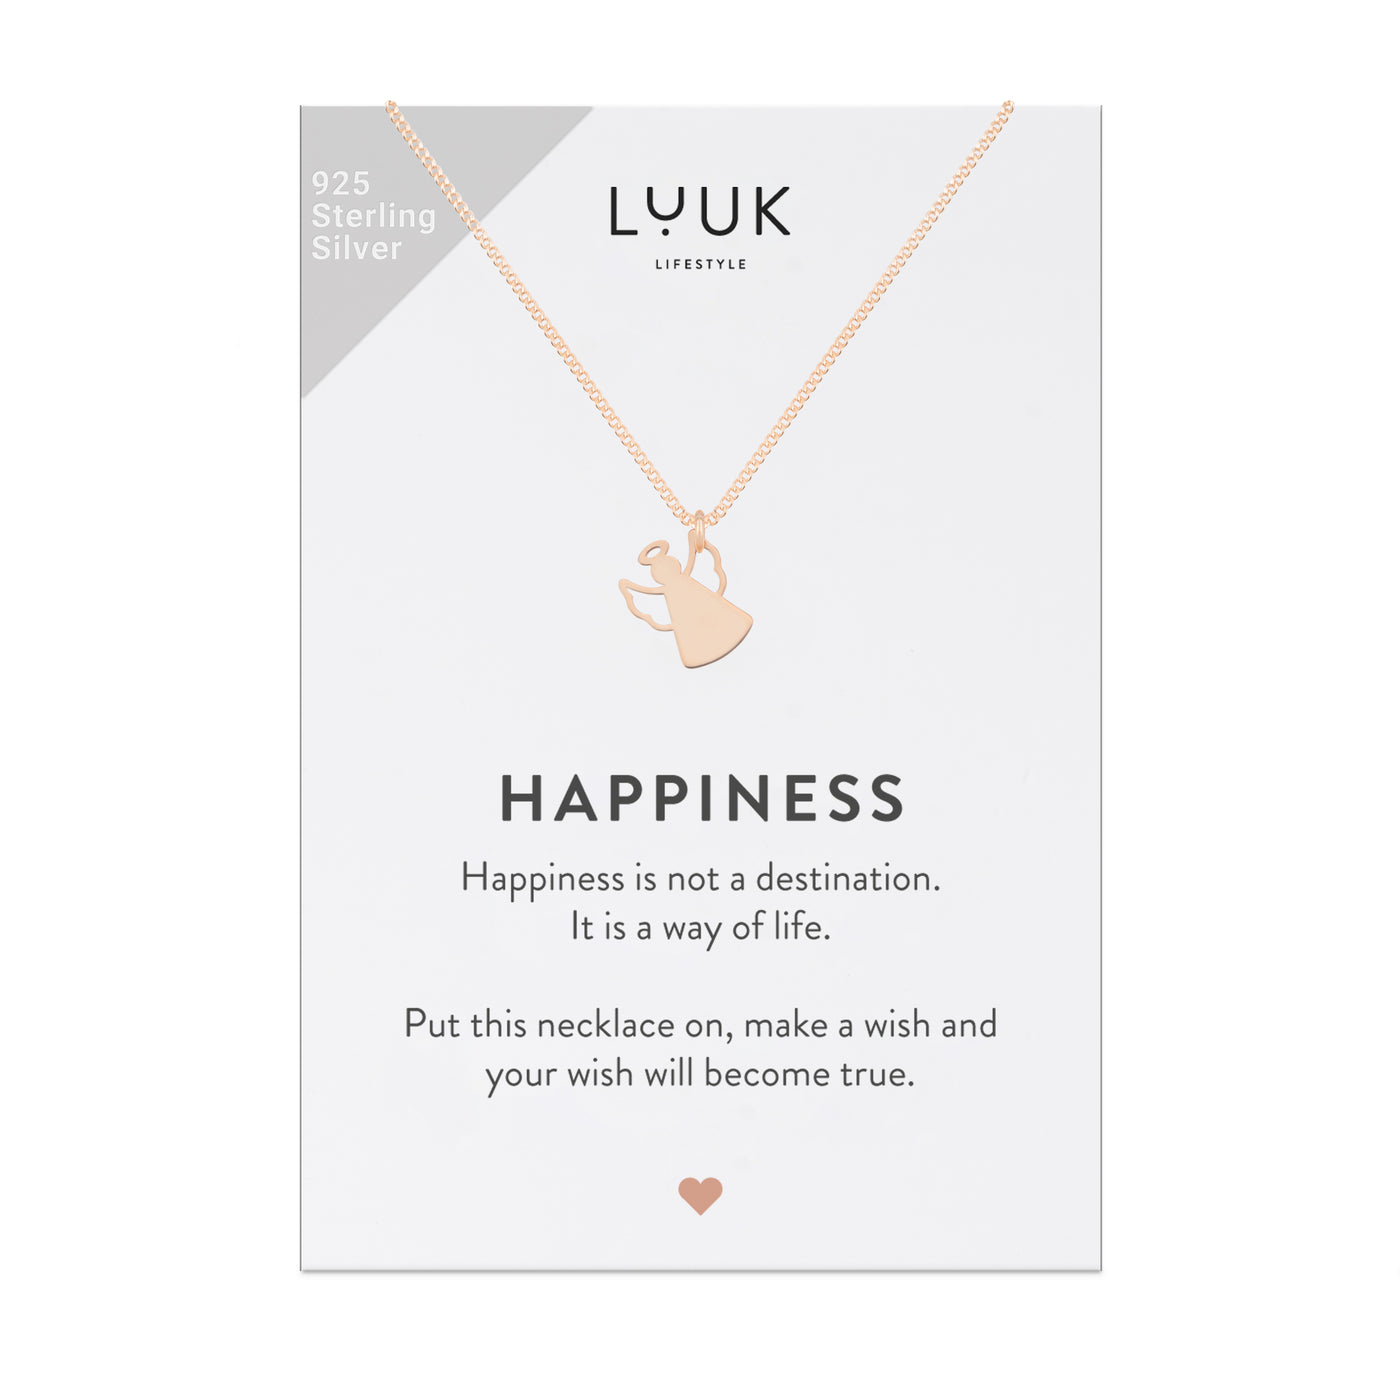 Rose goldene Kette mit Schutzengel Anhänger auf Happiness Spruchkarte von Luuk Lifestyle 